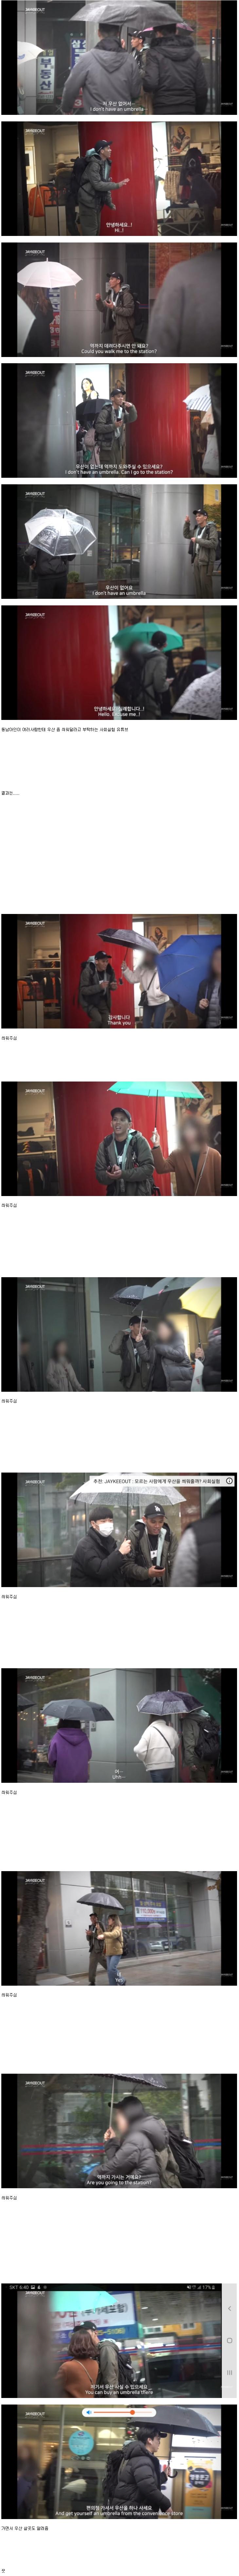 한국에서 동남아사람이 우산 좀 씌워달라고 한다면jpg.jpg